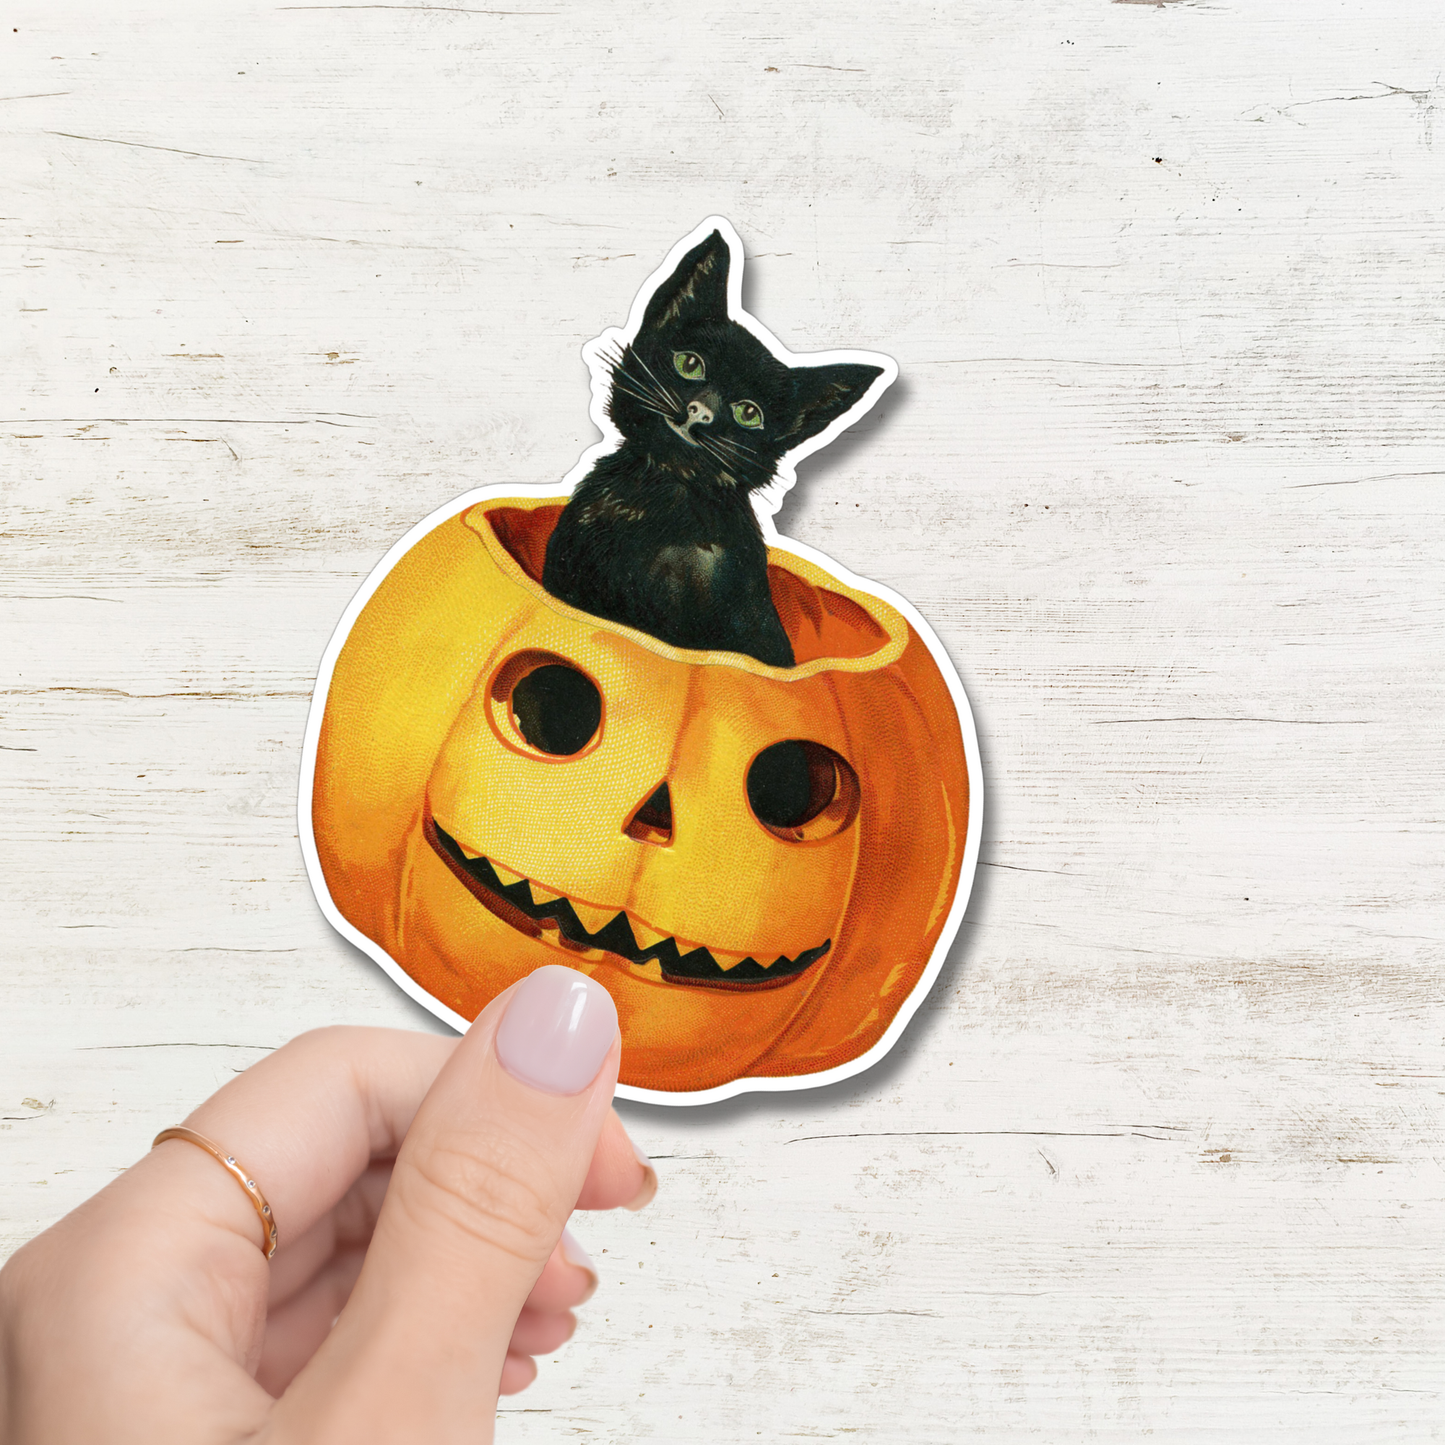 Sticker-Halloween-01: Black Cat Pumpkin